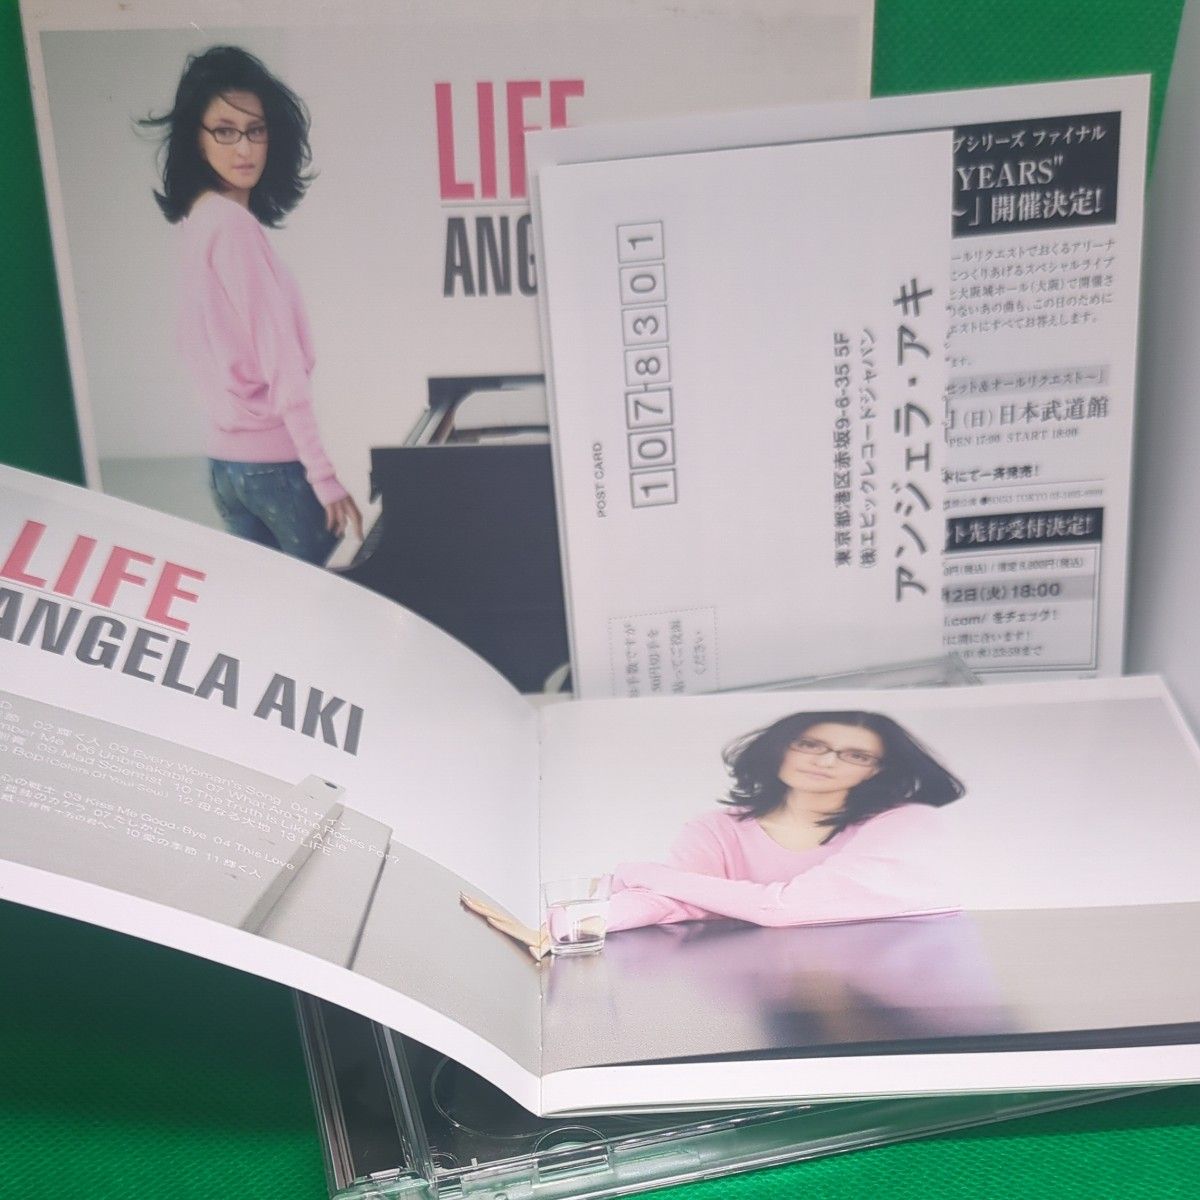  アンジェラ・アキ【CD】 LIFE (初回生産限定盤) (DVD付)　ANGELA　AKI